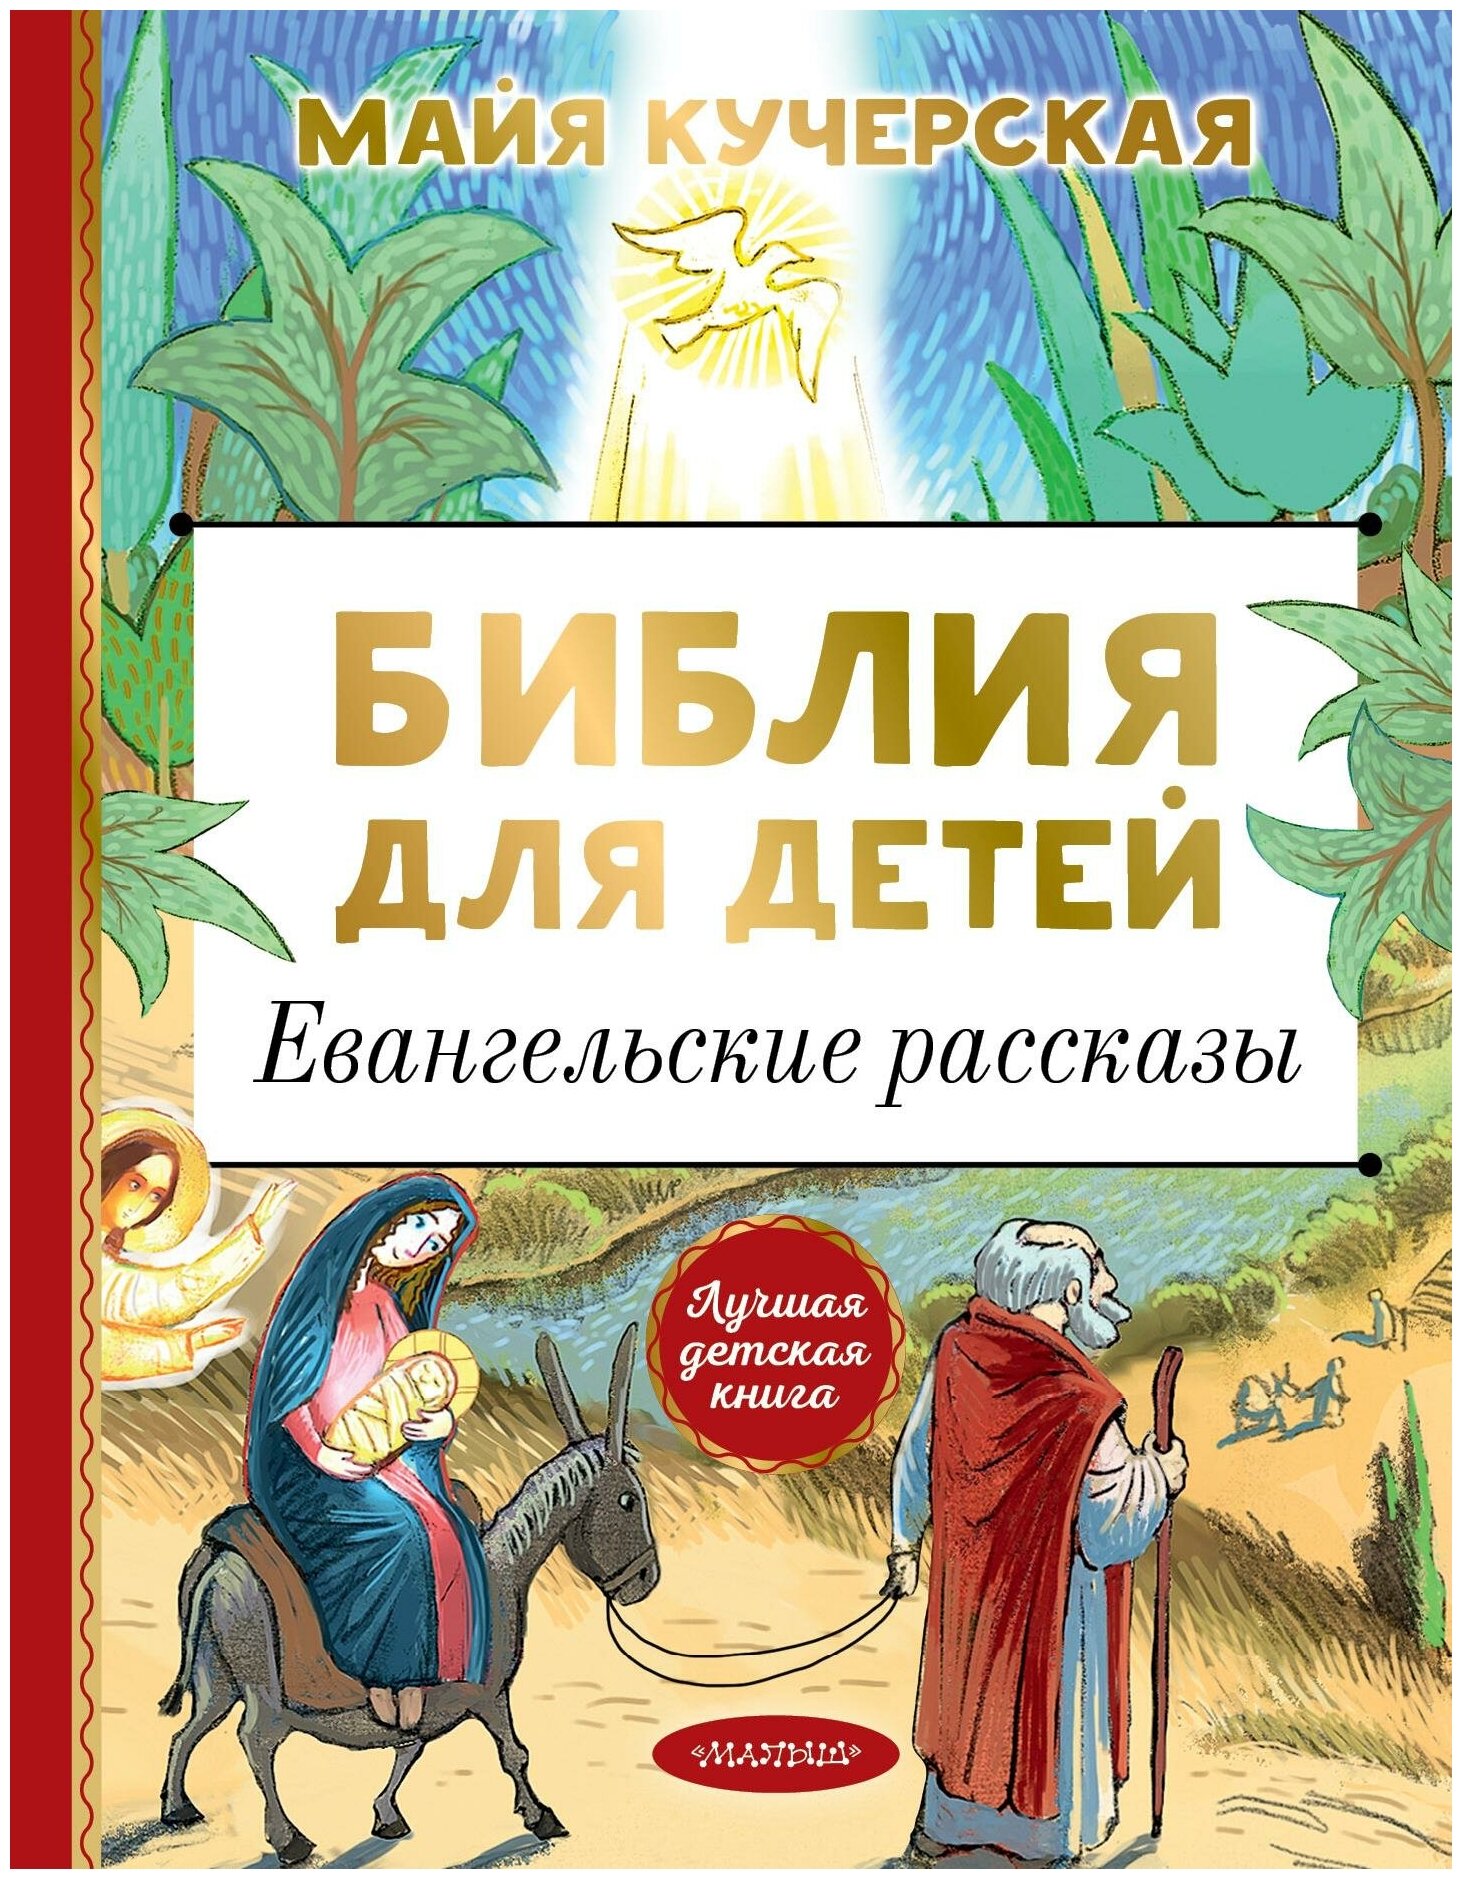 Кучерская М. А. Библия для детей. Евангельские рассказы. Лучшая детская книга